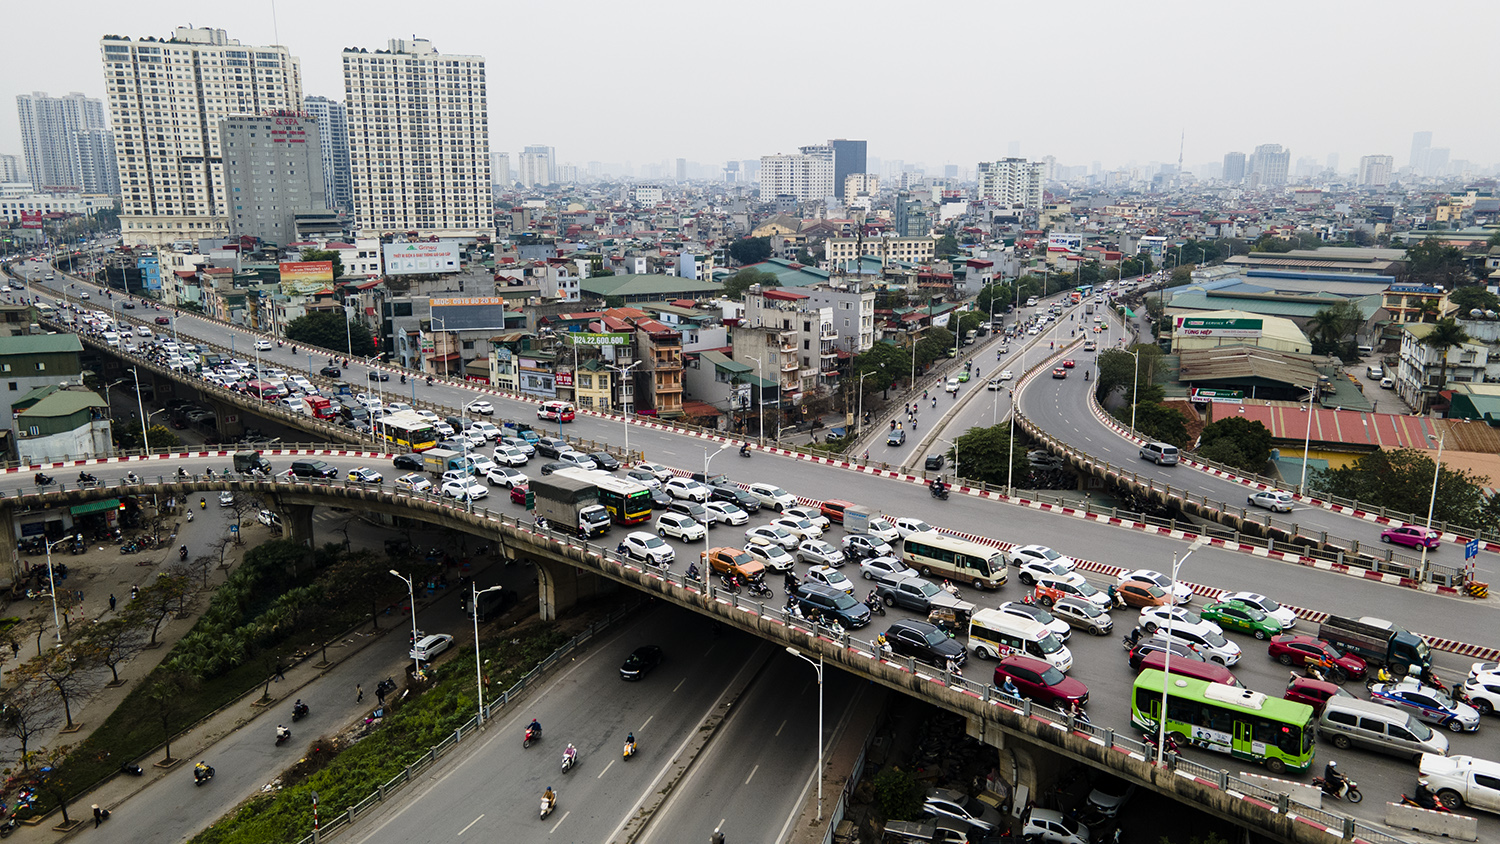 Gần 1 năm nay, Cầu Vĩnh Tuy luôn xảy ra tình trạng ùn tắc kéo dài vào giờ cao điểm theo hướng Minh Khai sang Long Biên, khiến người dân gặp khó khăn trong việc đi lại.